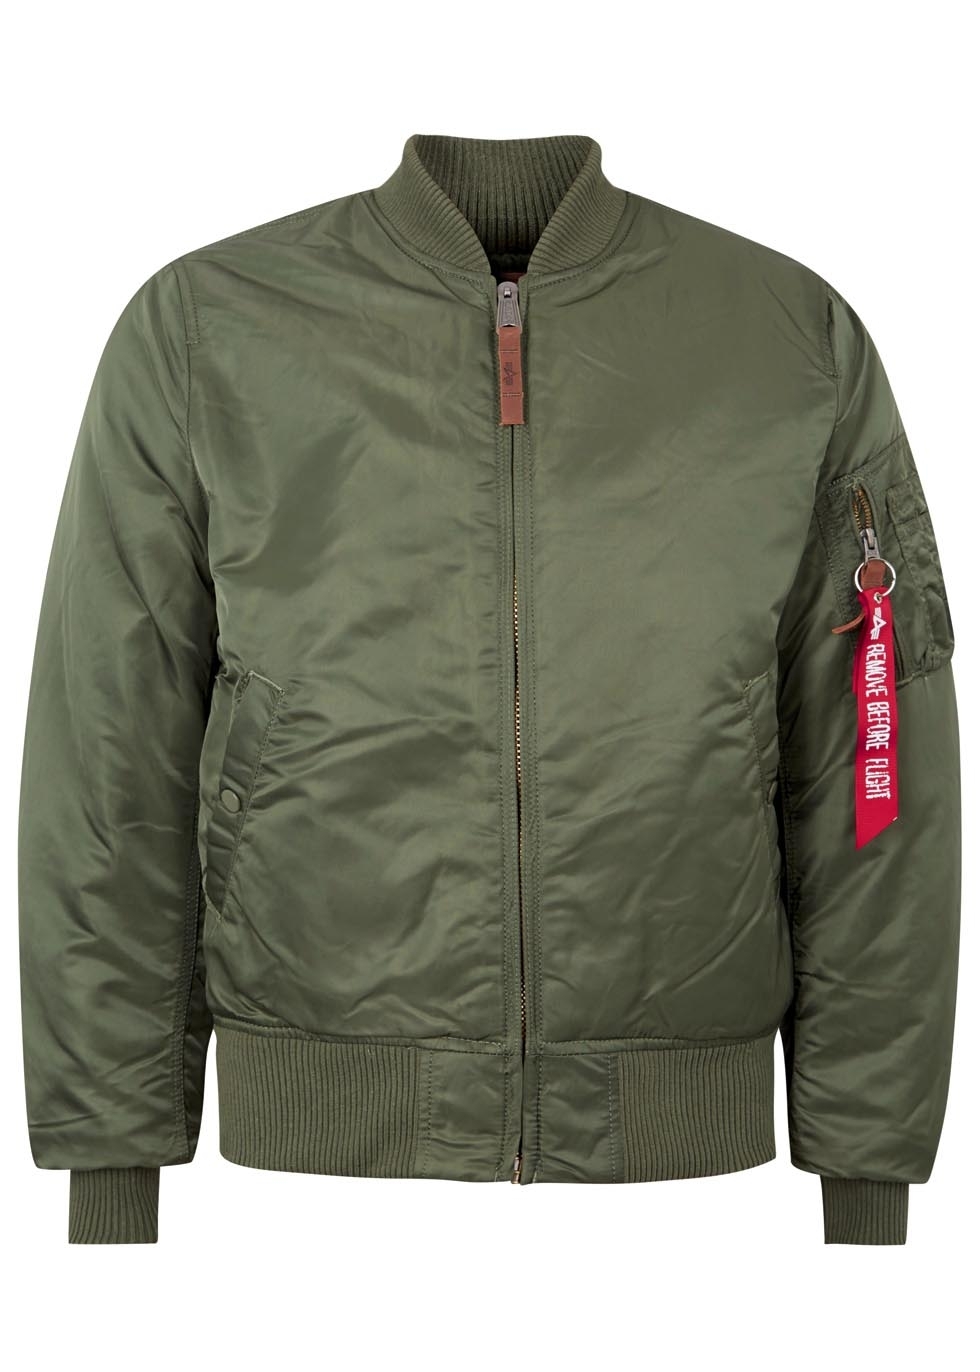 Army green satin twill bomber jacket